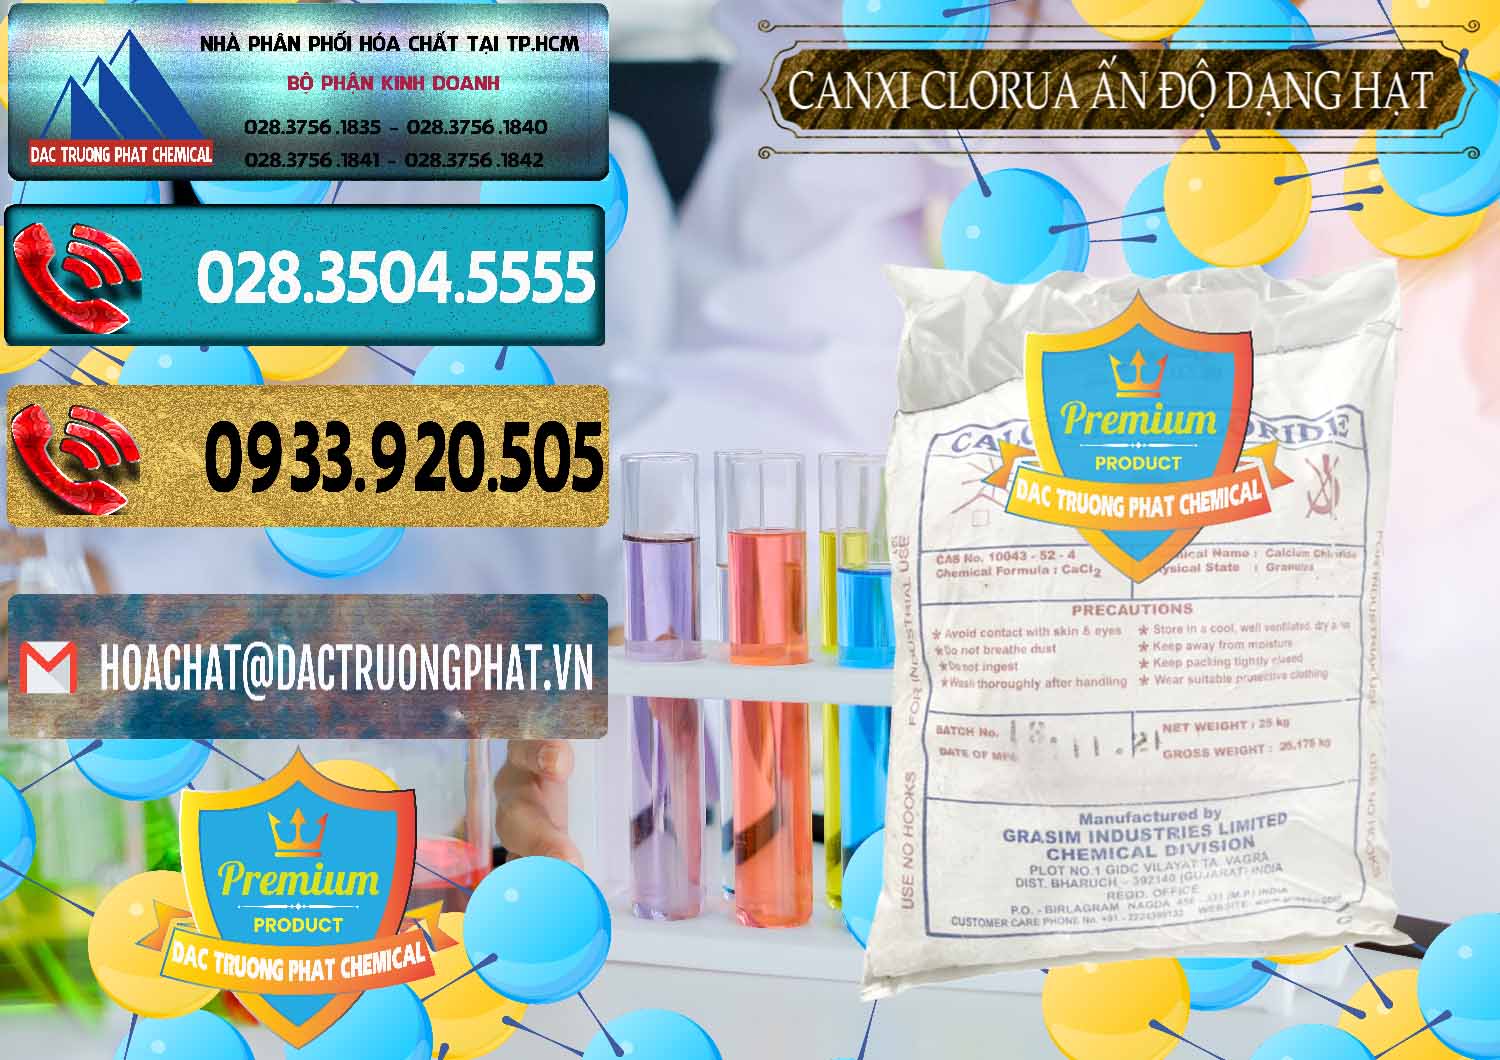 Cty chuyên cung ứng và bán CaCl2 – Canxi Clorua Dạng Hạt Aditya Birla Grasim Ấn Độ India - 0418 - Đơn vị chuyên nhập khẩu và cung cấp hóa chất tại TP.HCM - hoachatdetnhuom.com